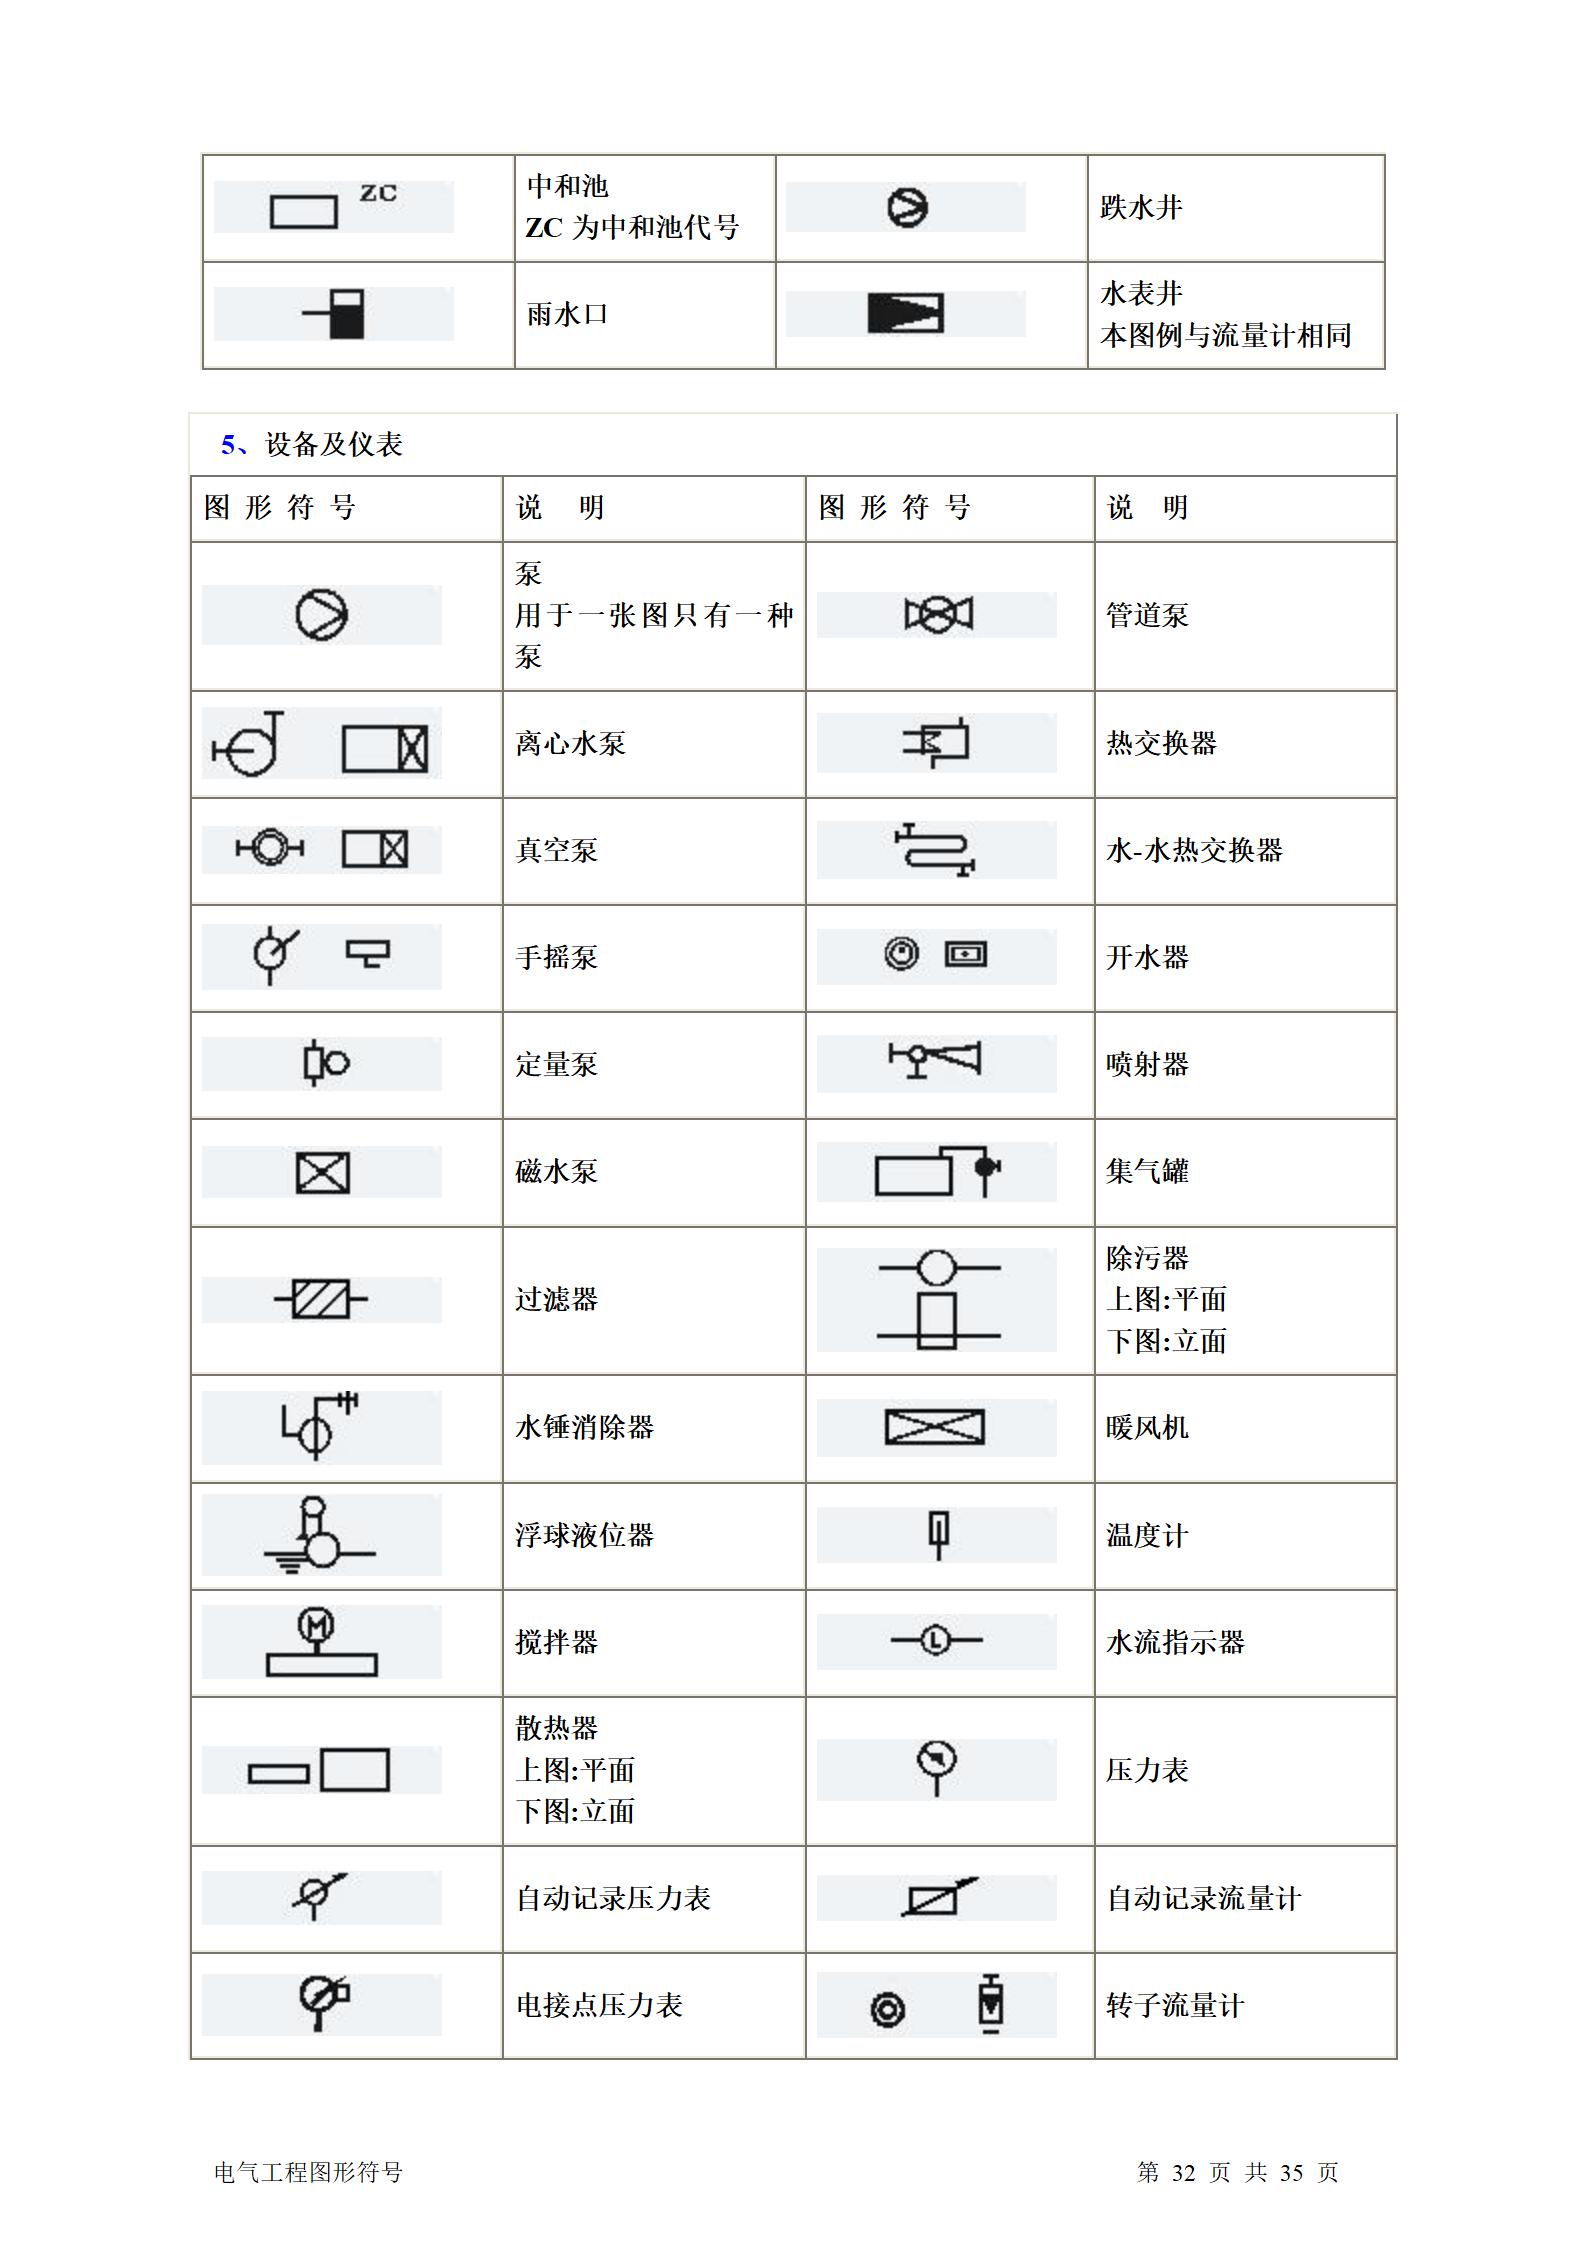 建筑电气、水暖、通风工程图形符号大全word版插图(32)